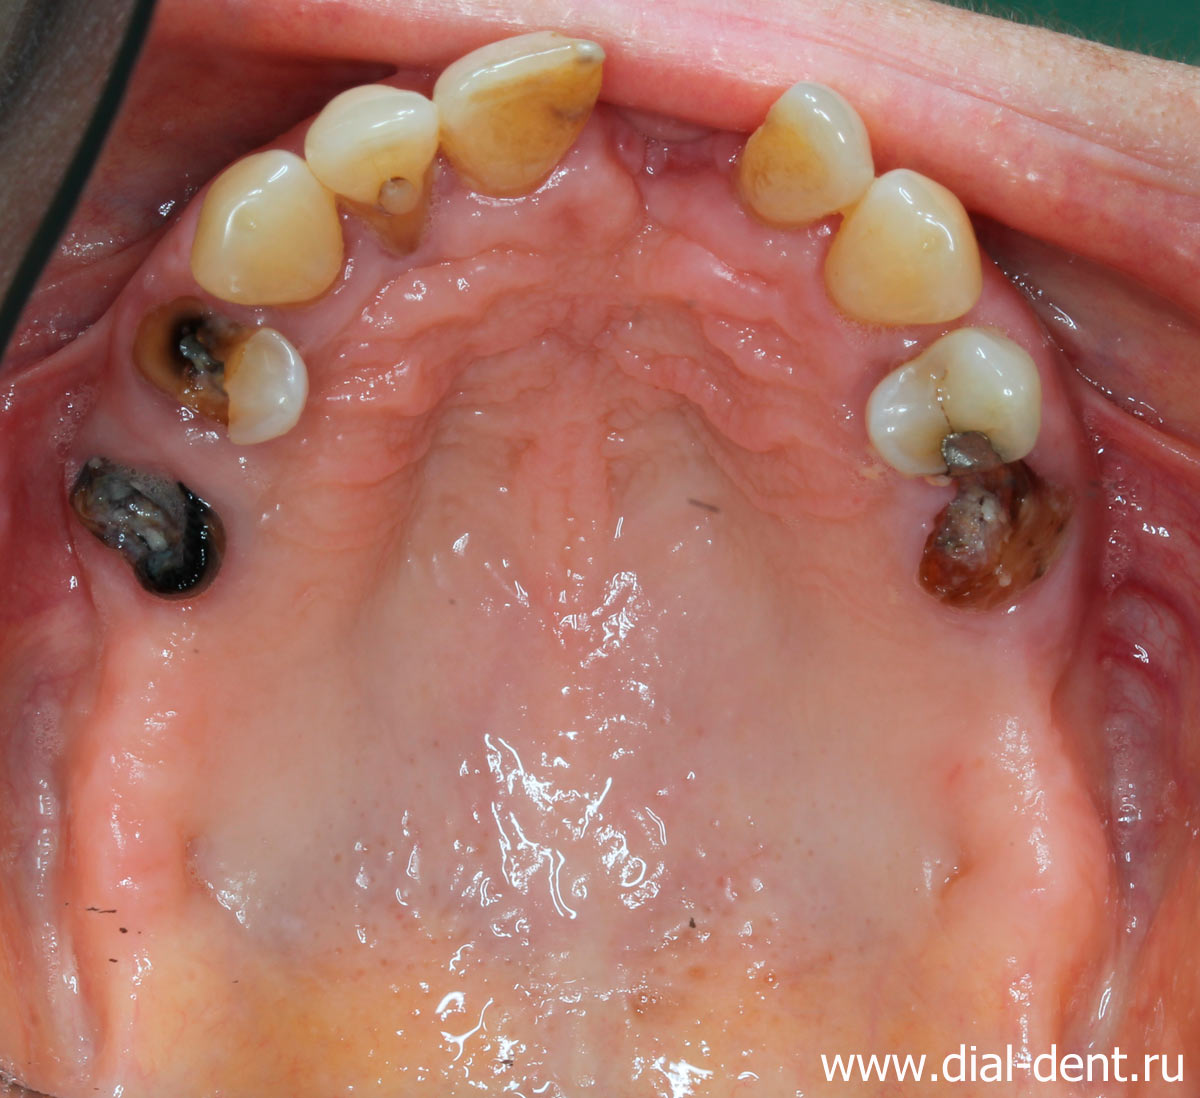 пародонтит, отсутствие зубов - верхняя челюсть до лечения